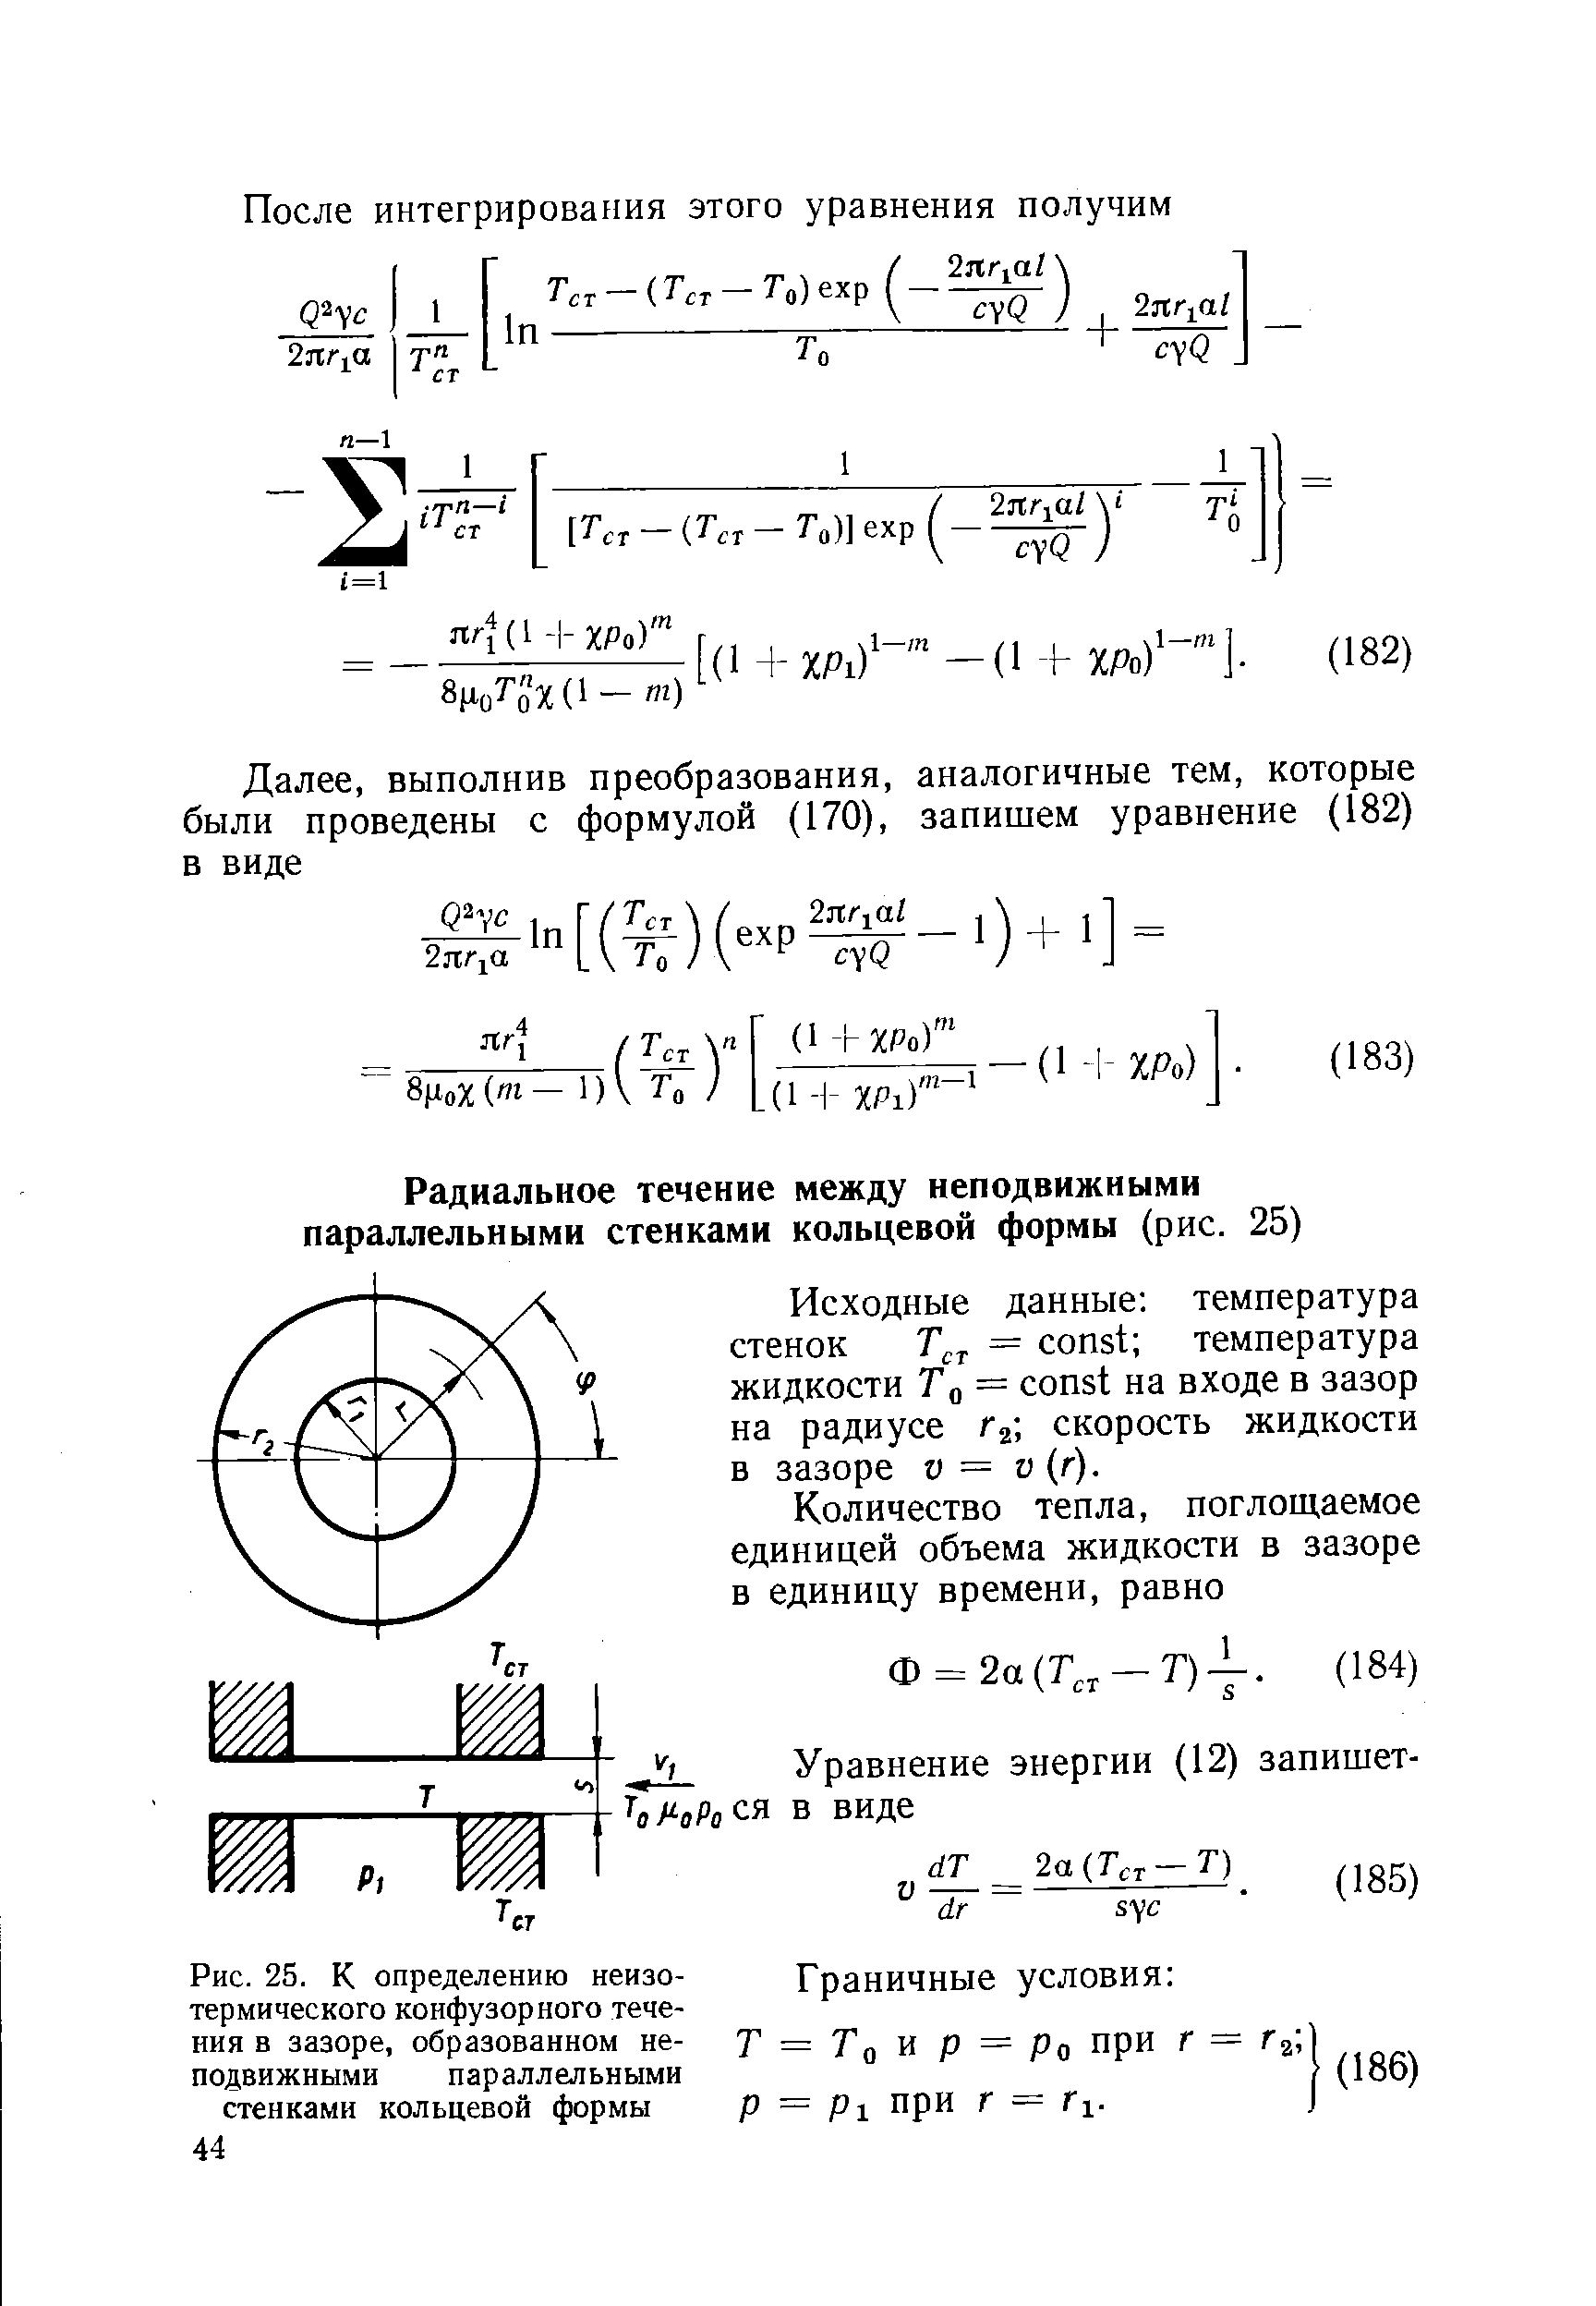 Рис. 25. К определению неизотермического конфузорного течения в зазоре, образованном не- Т = Тп W р = Рп при Г = Га ] подвижными параллельными (186)
